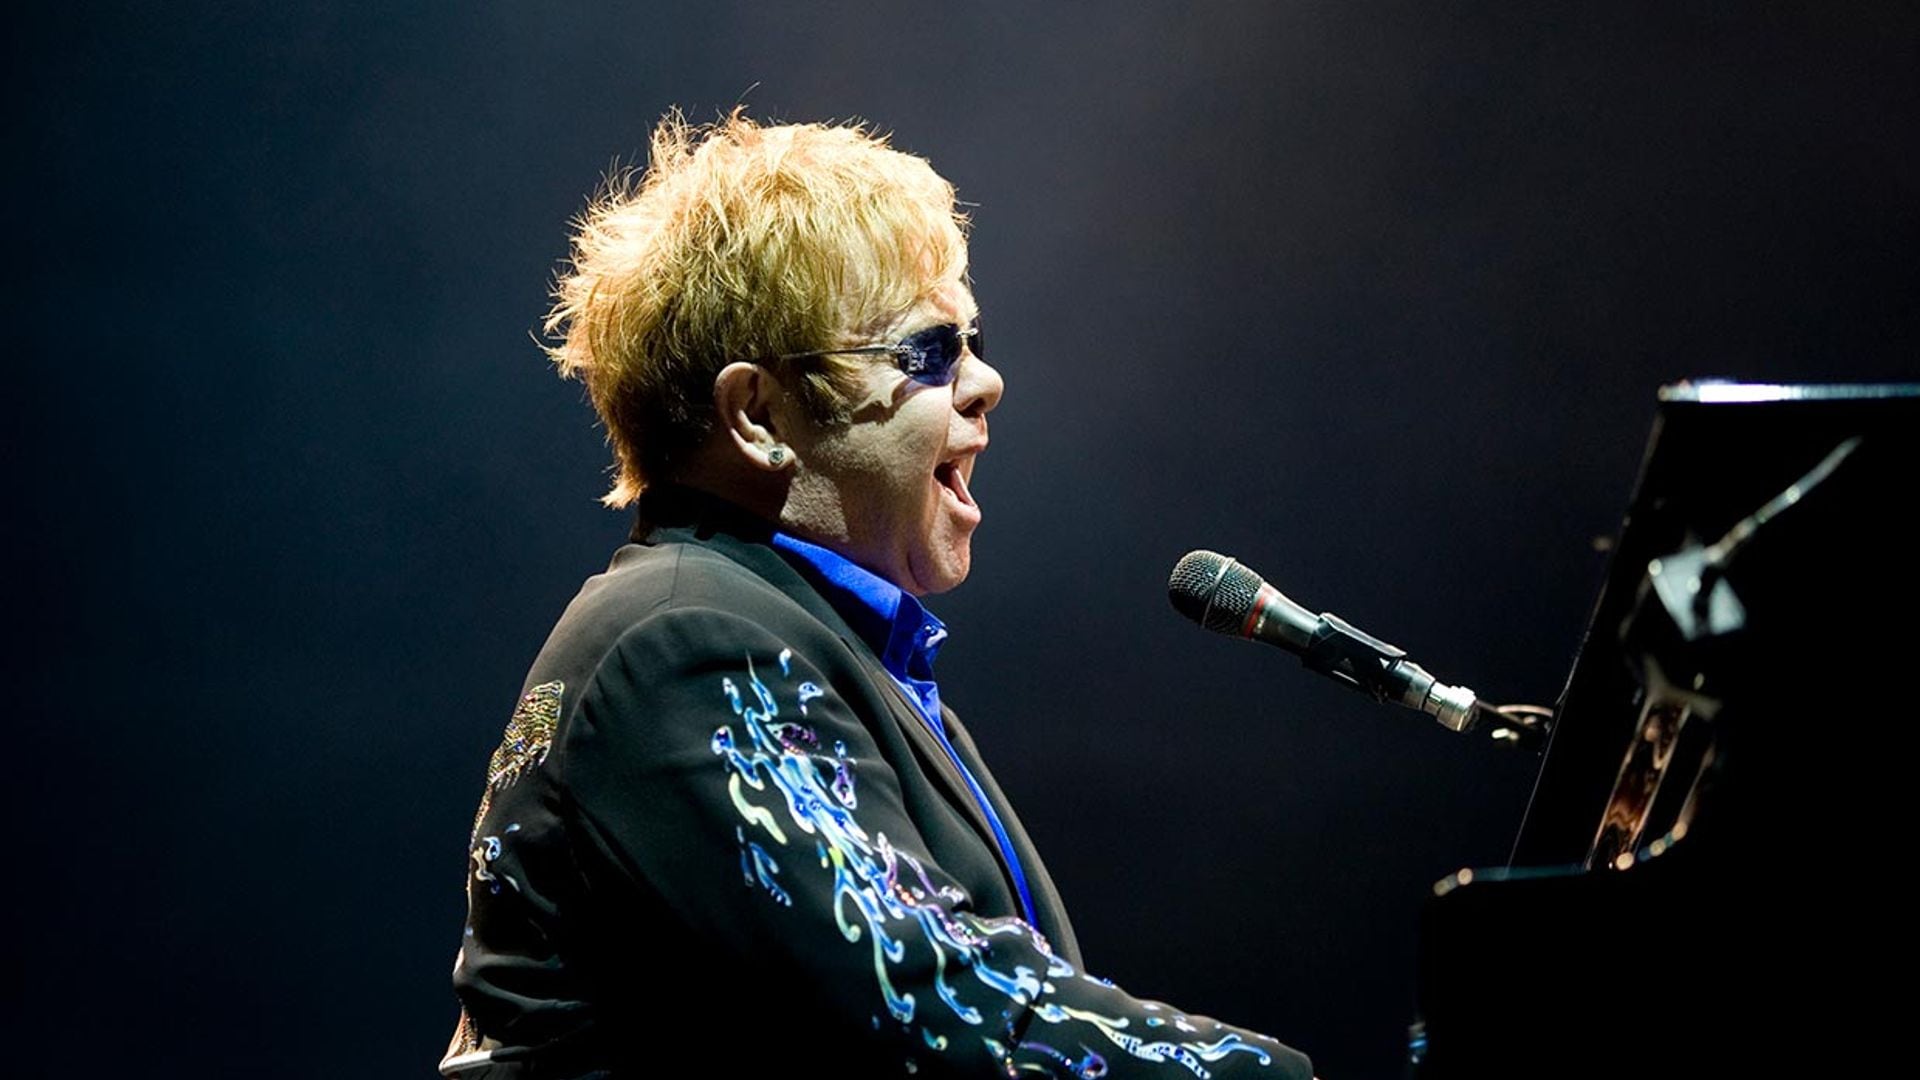 Elton John y su gira final, 'en jaque' por culpa de una neumonía